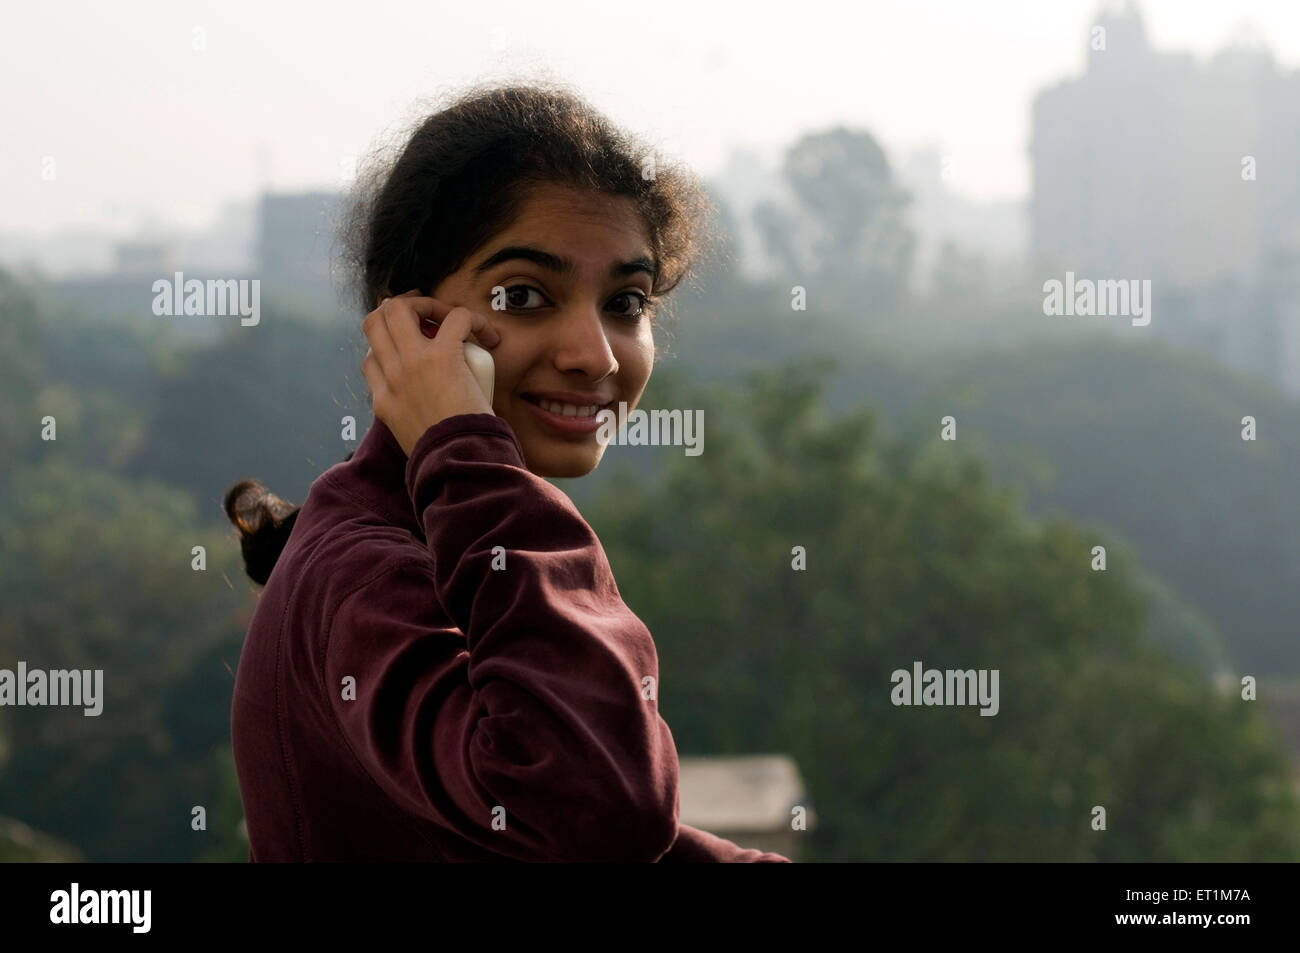 Ein Mädchen telefonieren mit Handy in Wintermorgen Pune Maharashtra Indien Asien Herr # 191 1 Stockfoto